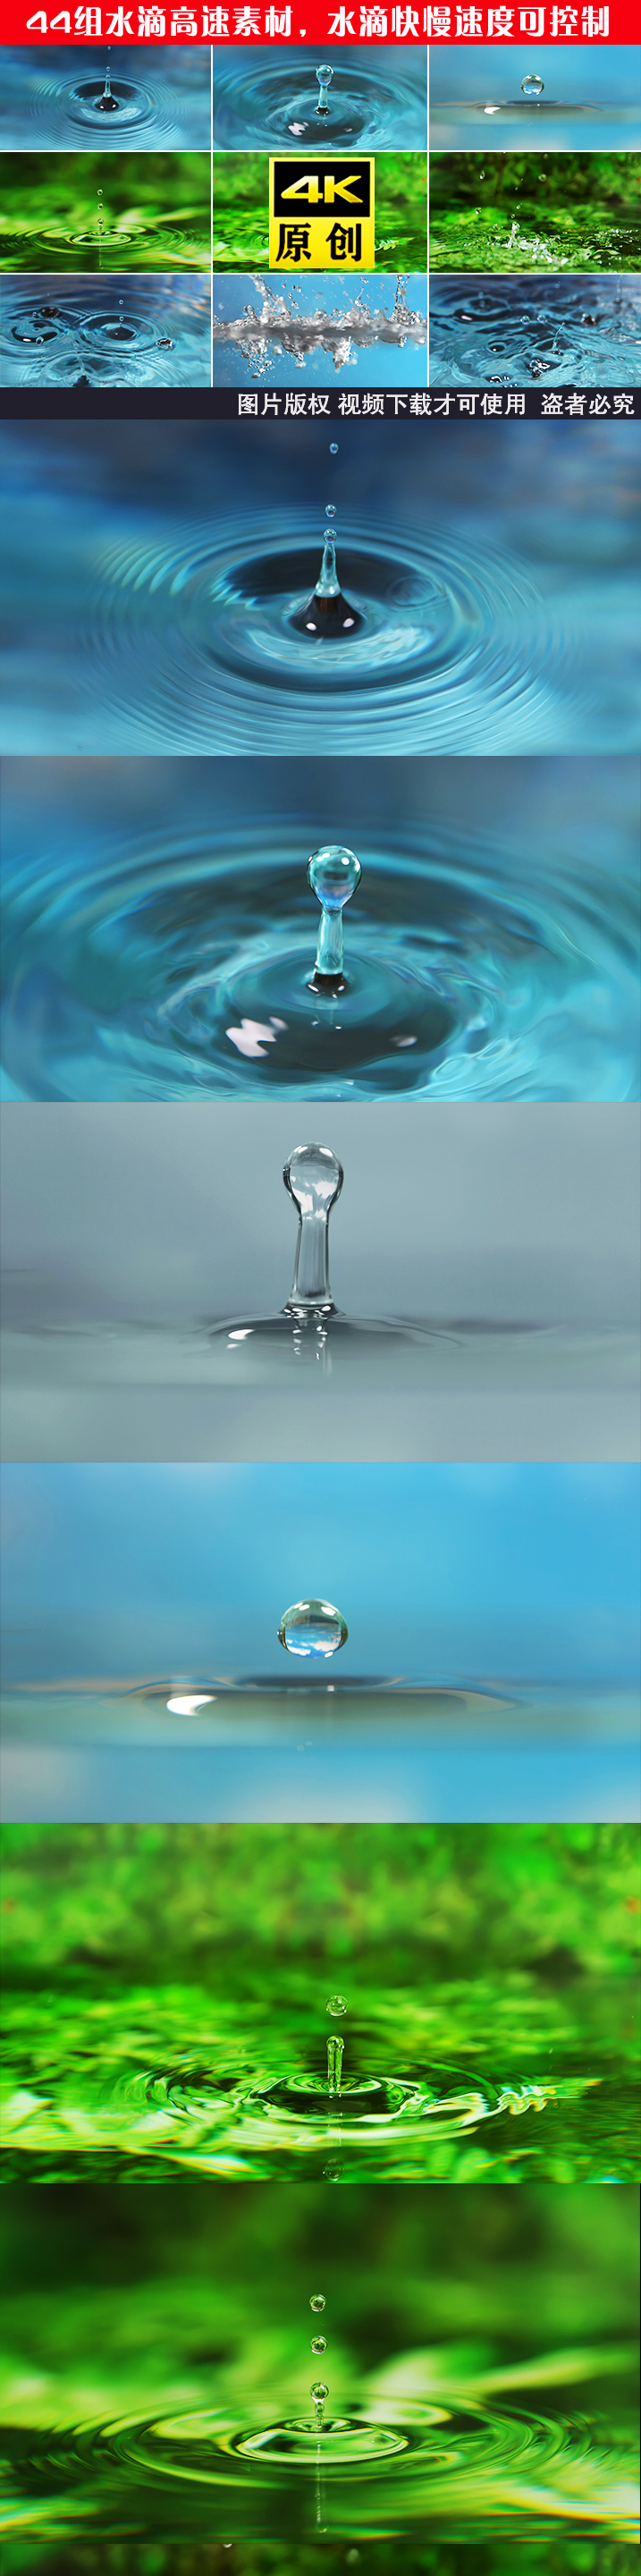 水天然水滴水纹滴水波纹波纹水资源水滴滴水